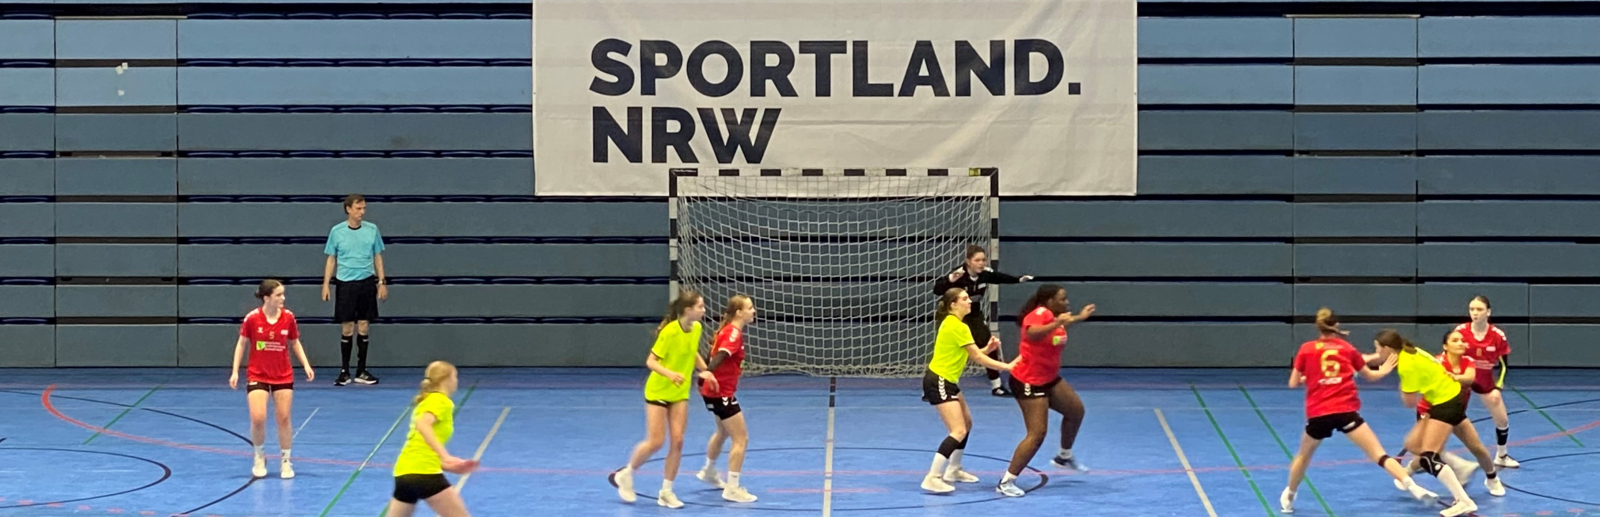 Ein Handball-Spiel vor dem Sportland.NRW-Logo